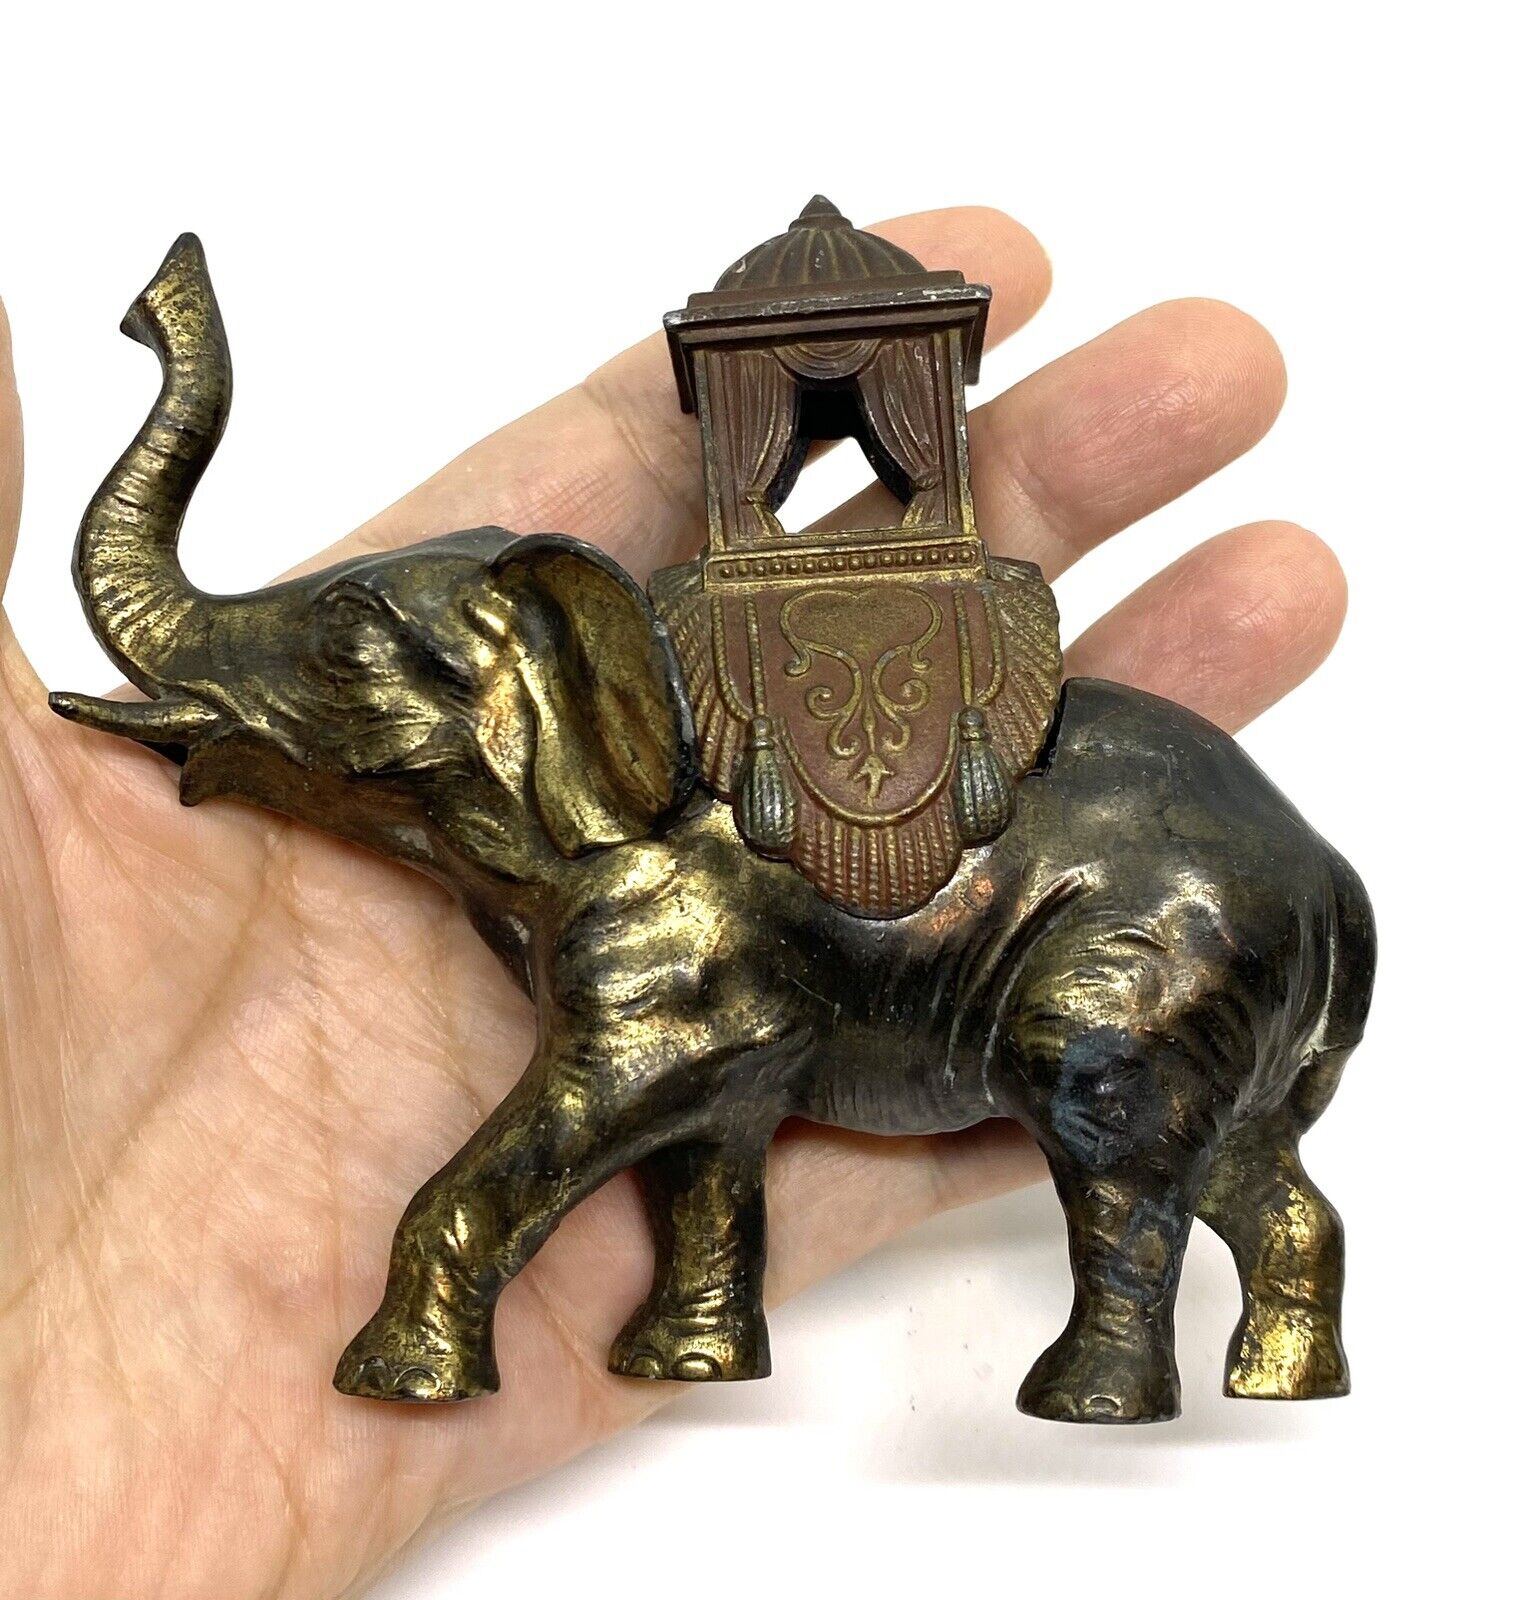 Vintage Cast Metal Hand Crafted Elephant Incense Burner 4.1/2 X 2 X 4.1/4”